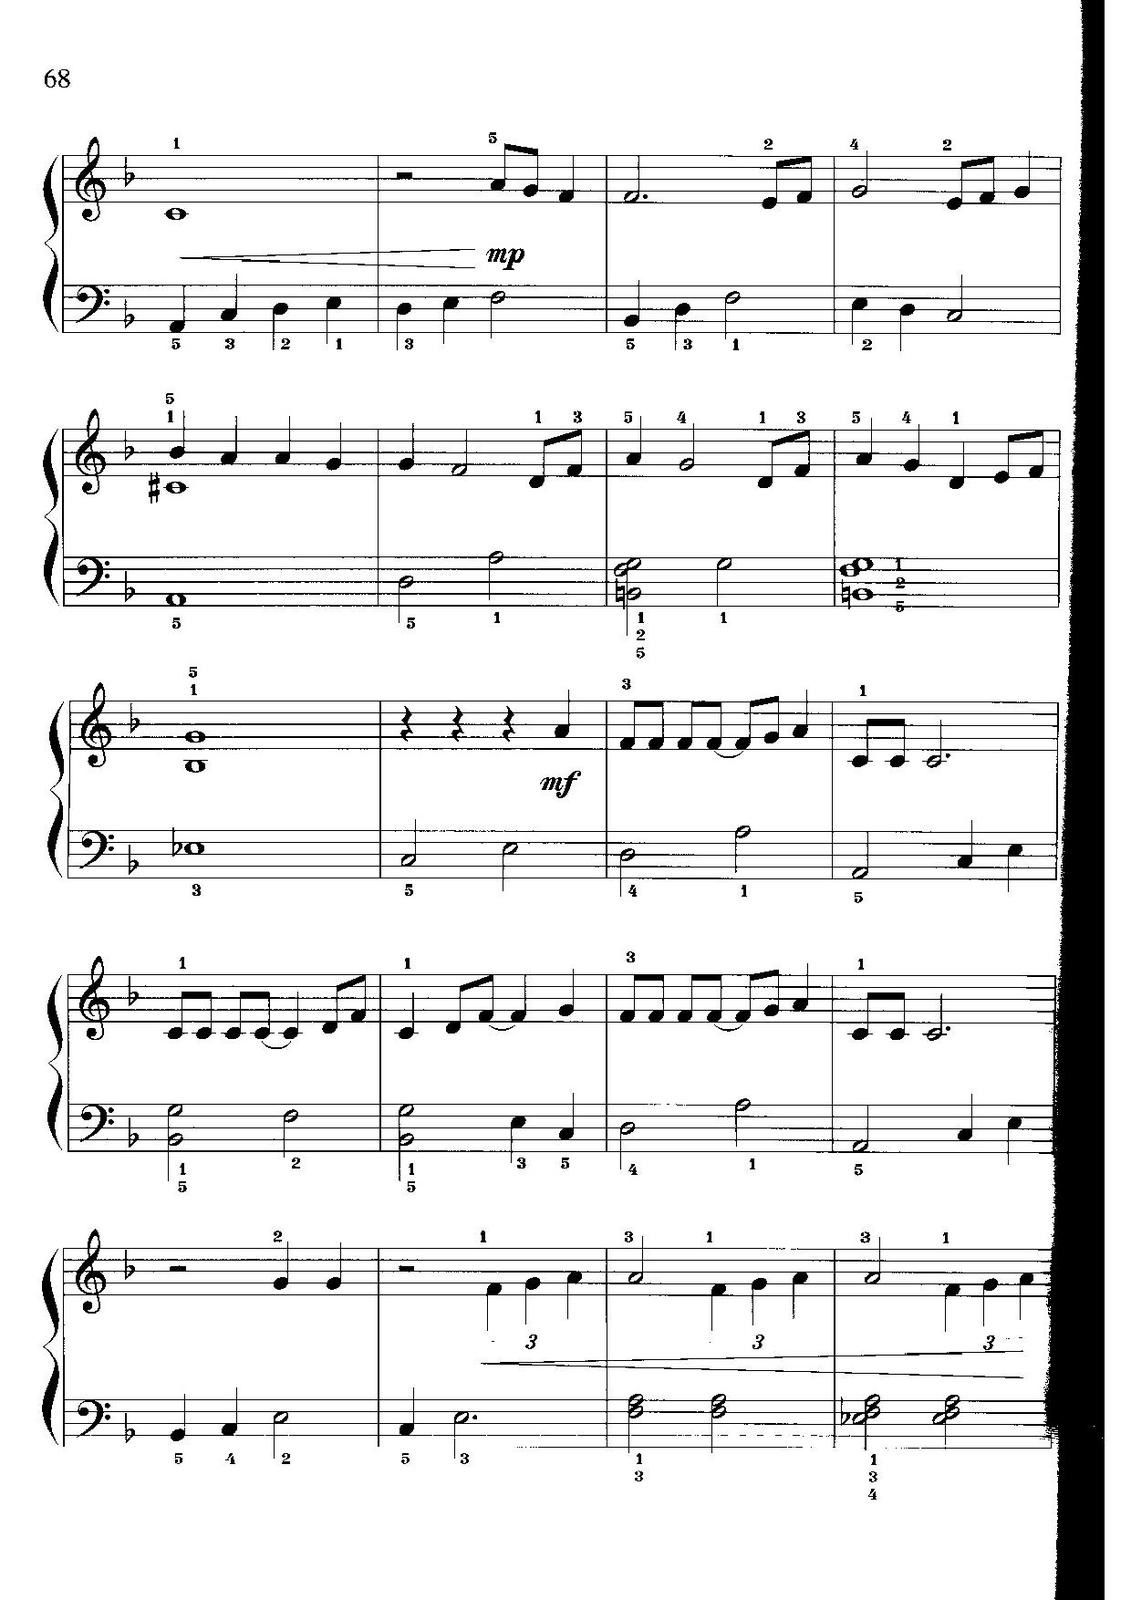 Partitura para Piano "Parte De El" | La Sirenita - Disney - Las Notas De  Nana